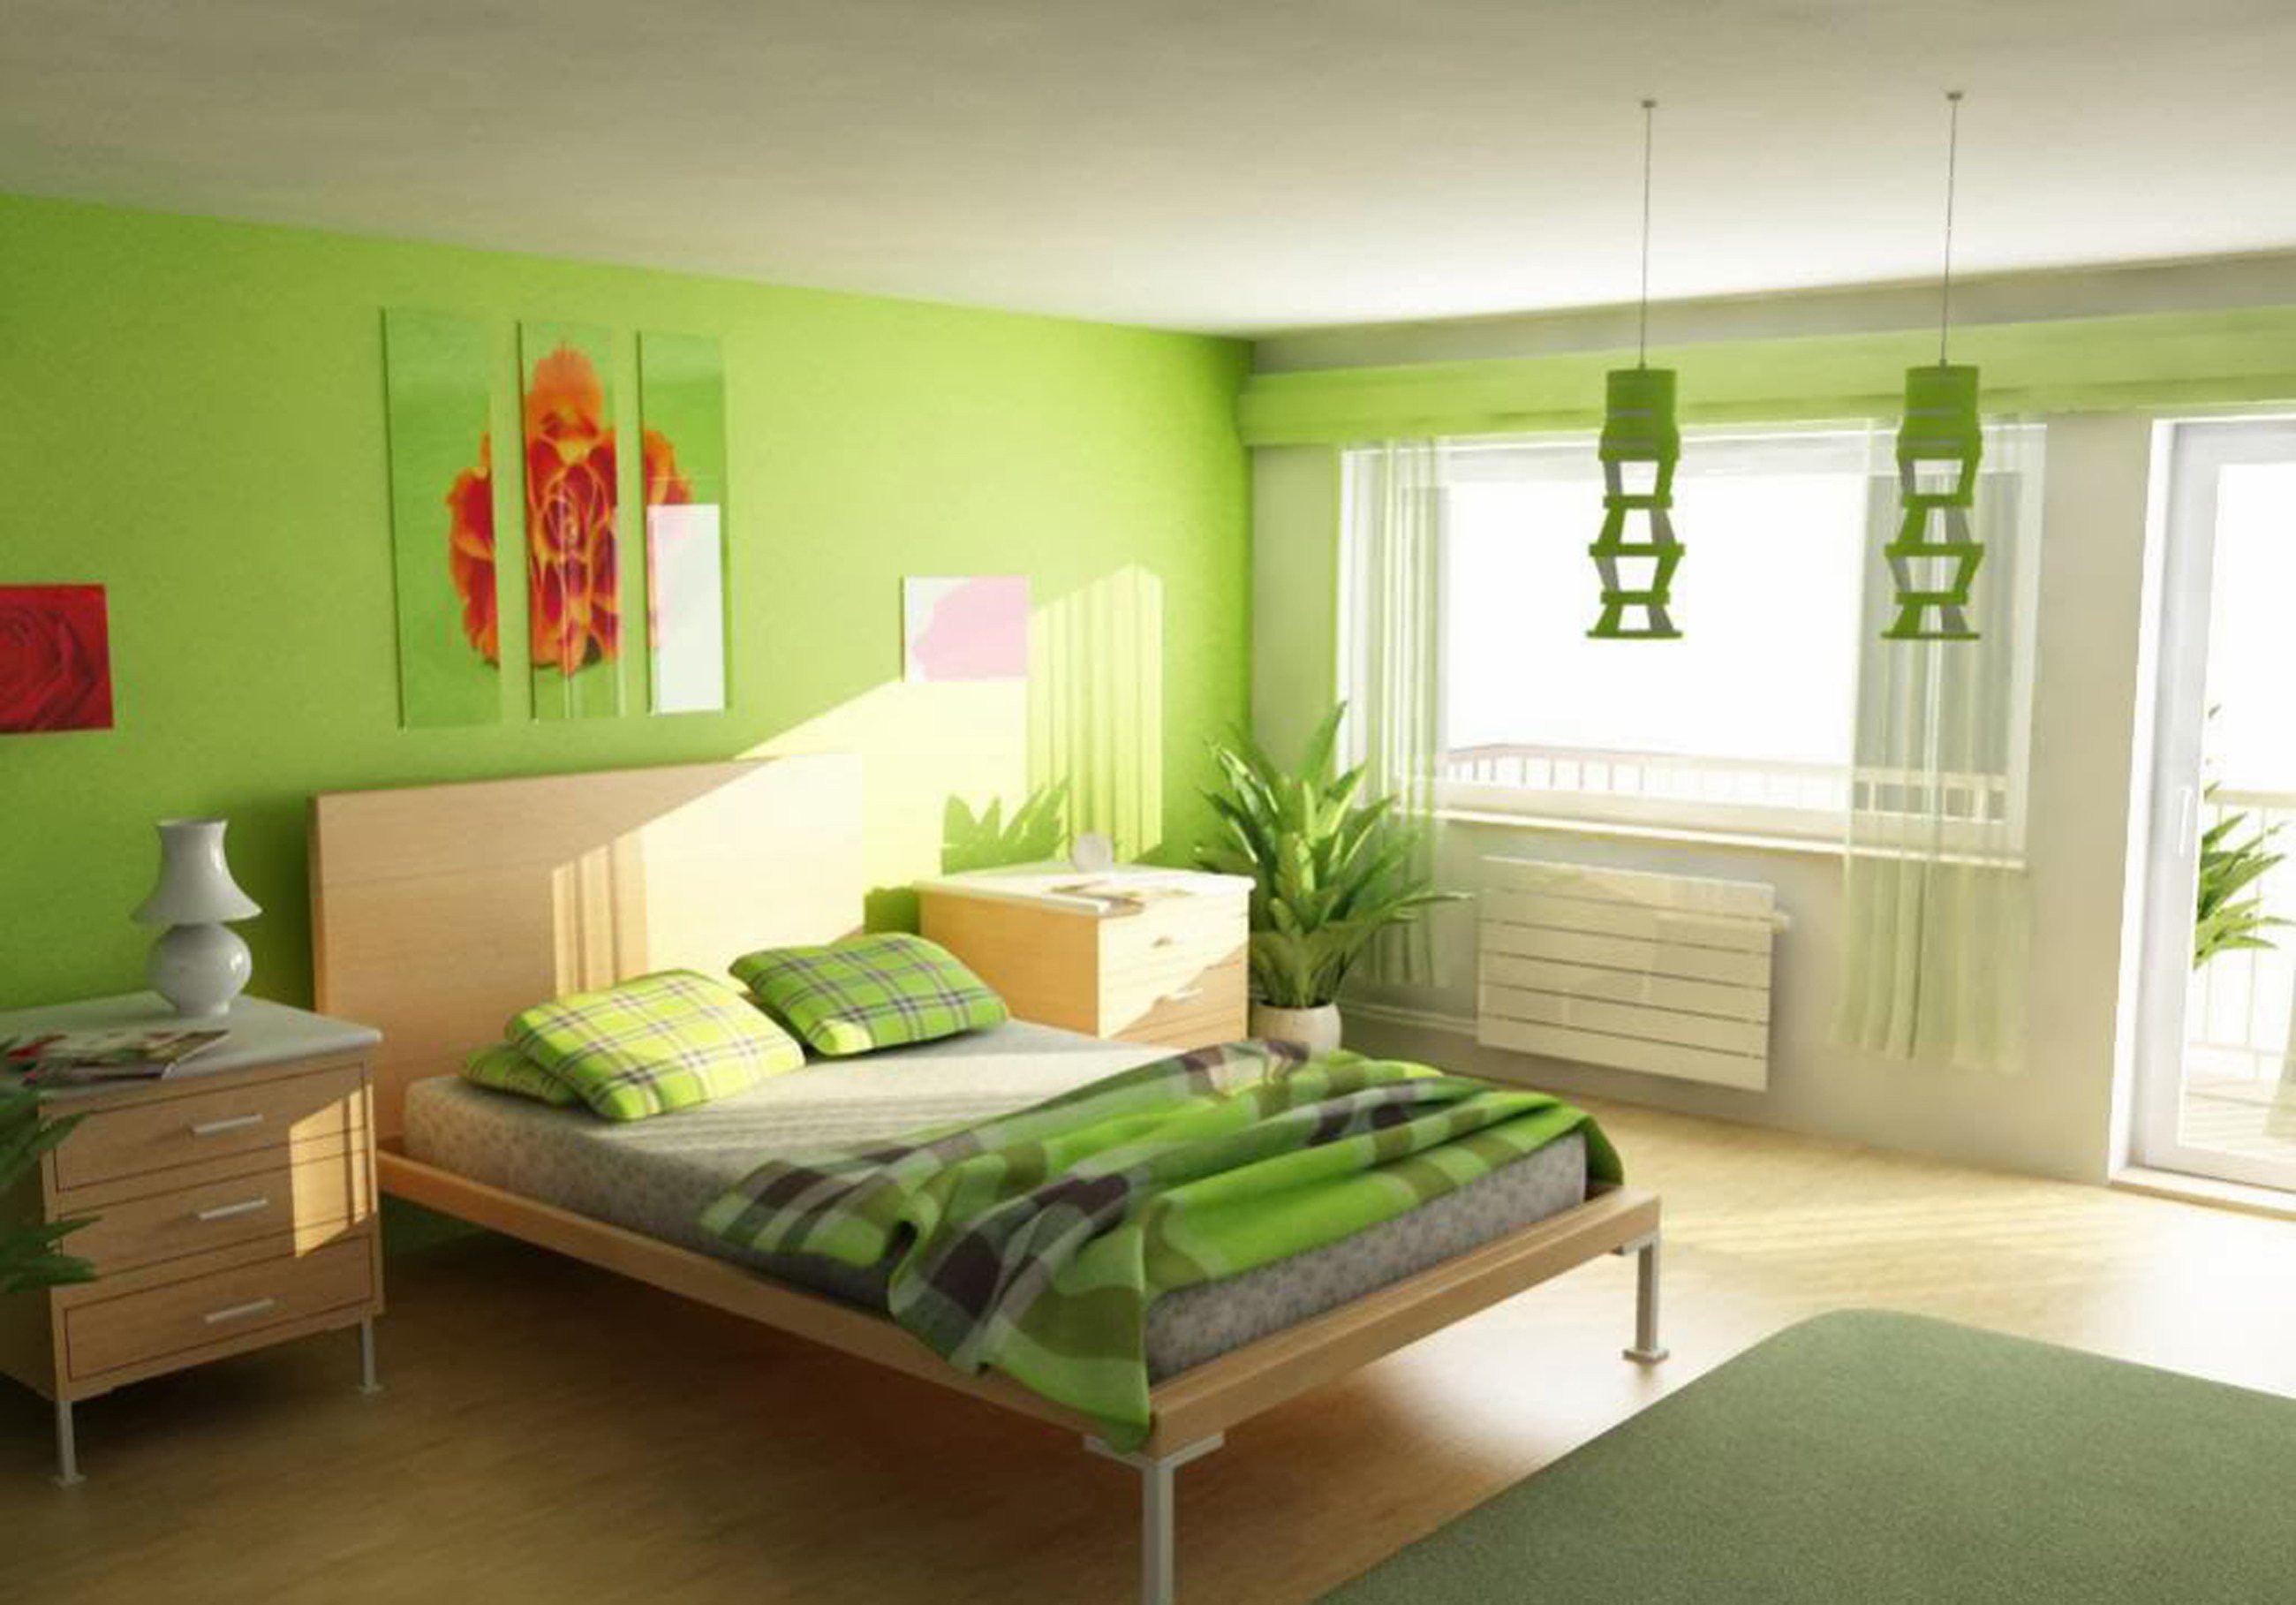 Обои в зеленых тонах. Спальня в салатовых тонах. Зеленый цвет в интерьере. Комната в зеленом цвете. Комната с зелеными стенами.